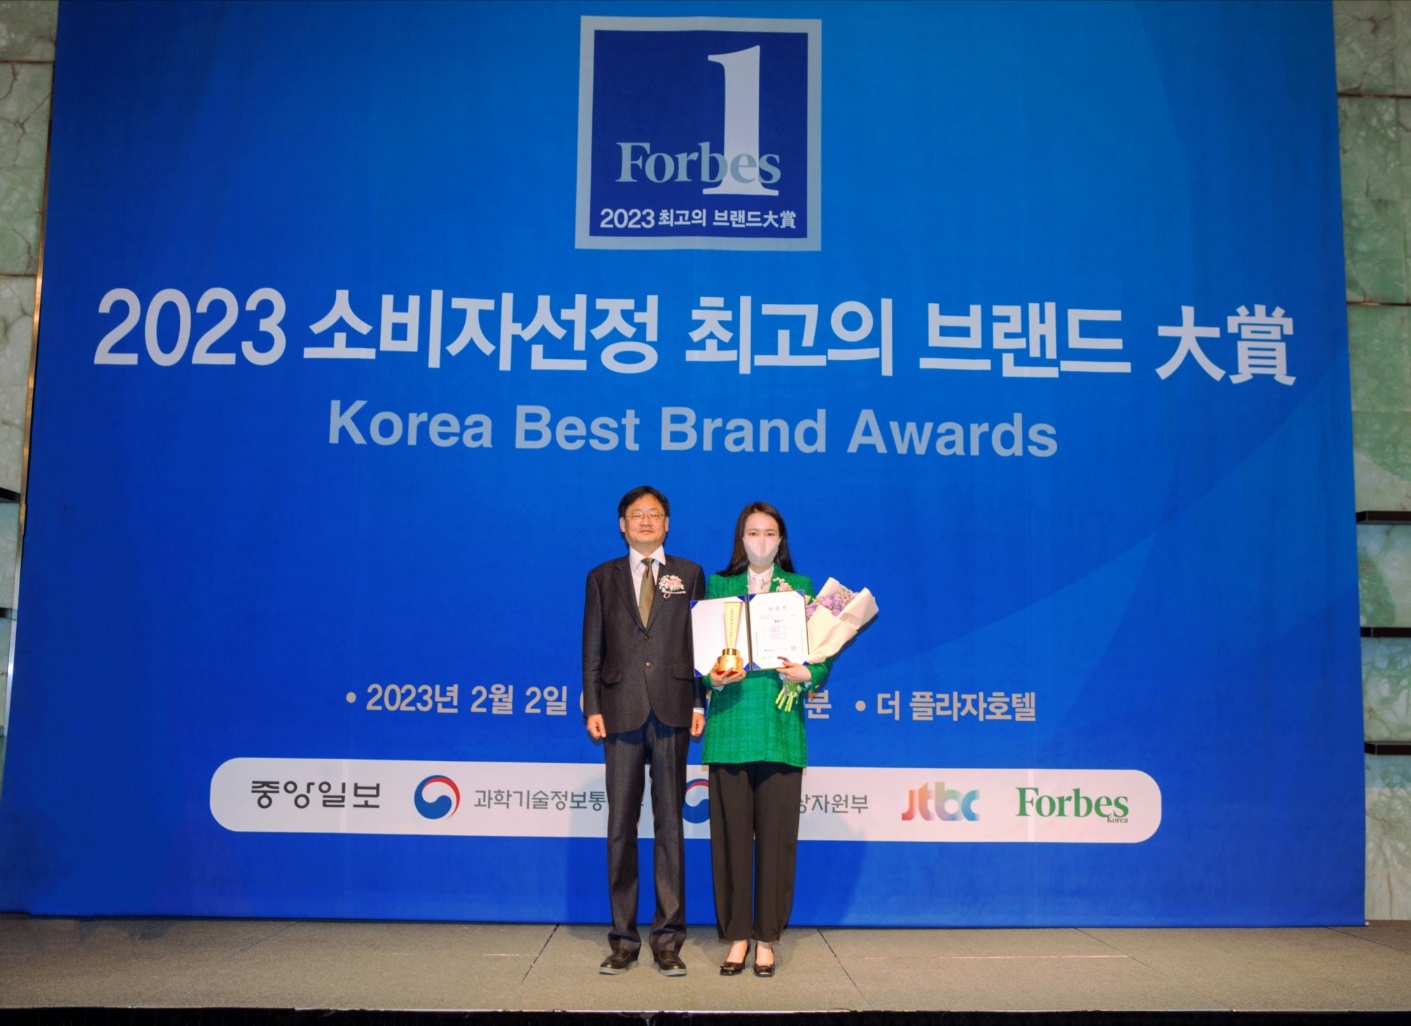 [생활경제 이슈] 한솥, ‘2023 소비자선정 최고의 브랜드 대상’ 8년 연속 수상 外